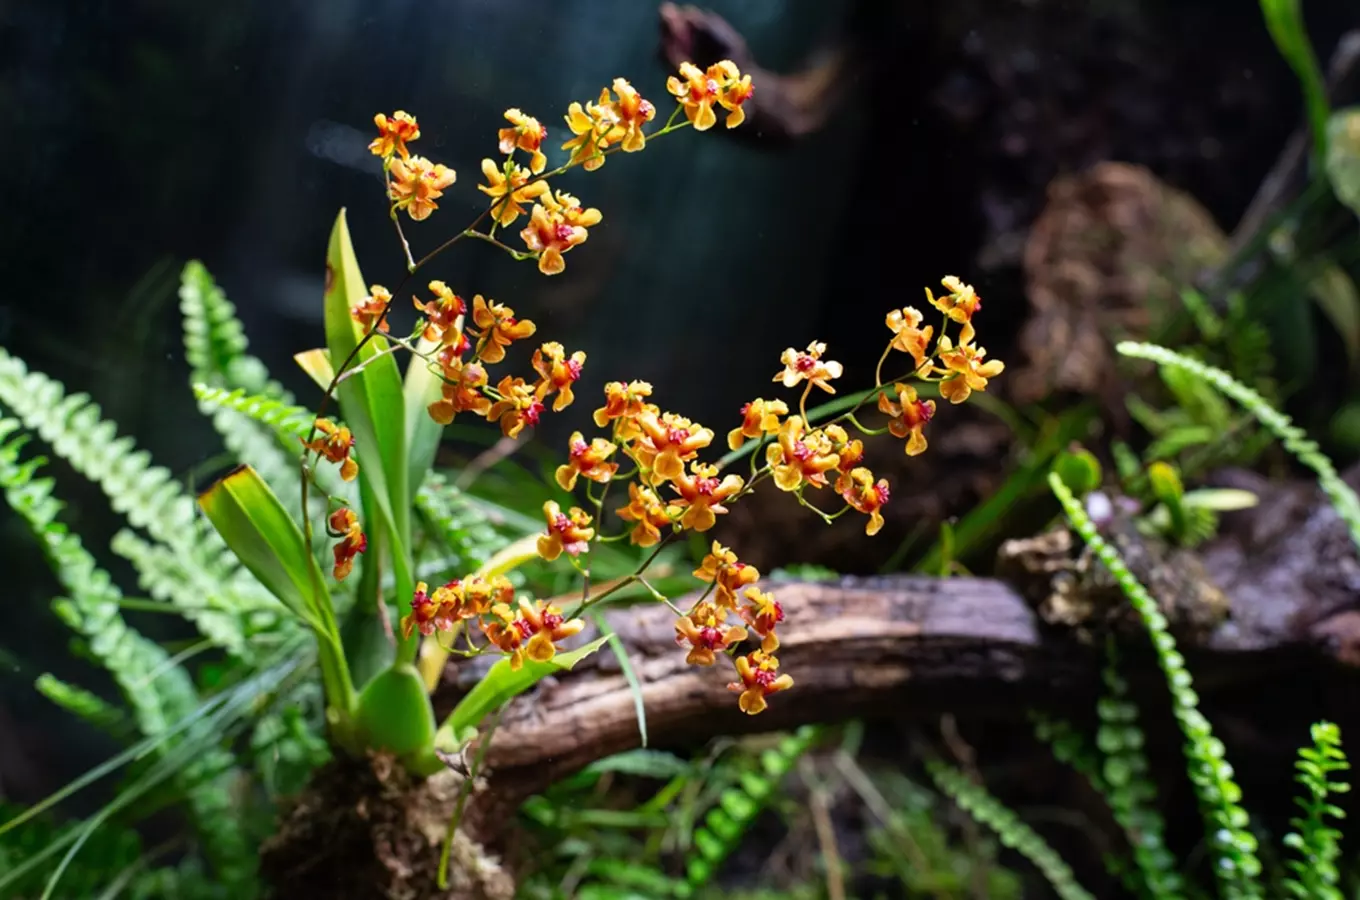 Potěšte se krásou křehkých květů i uprostřed zimy v liberecké botanické zahradě